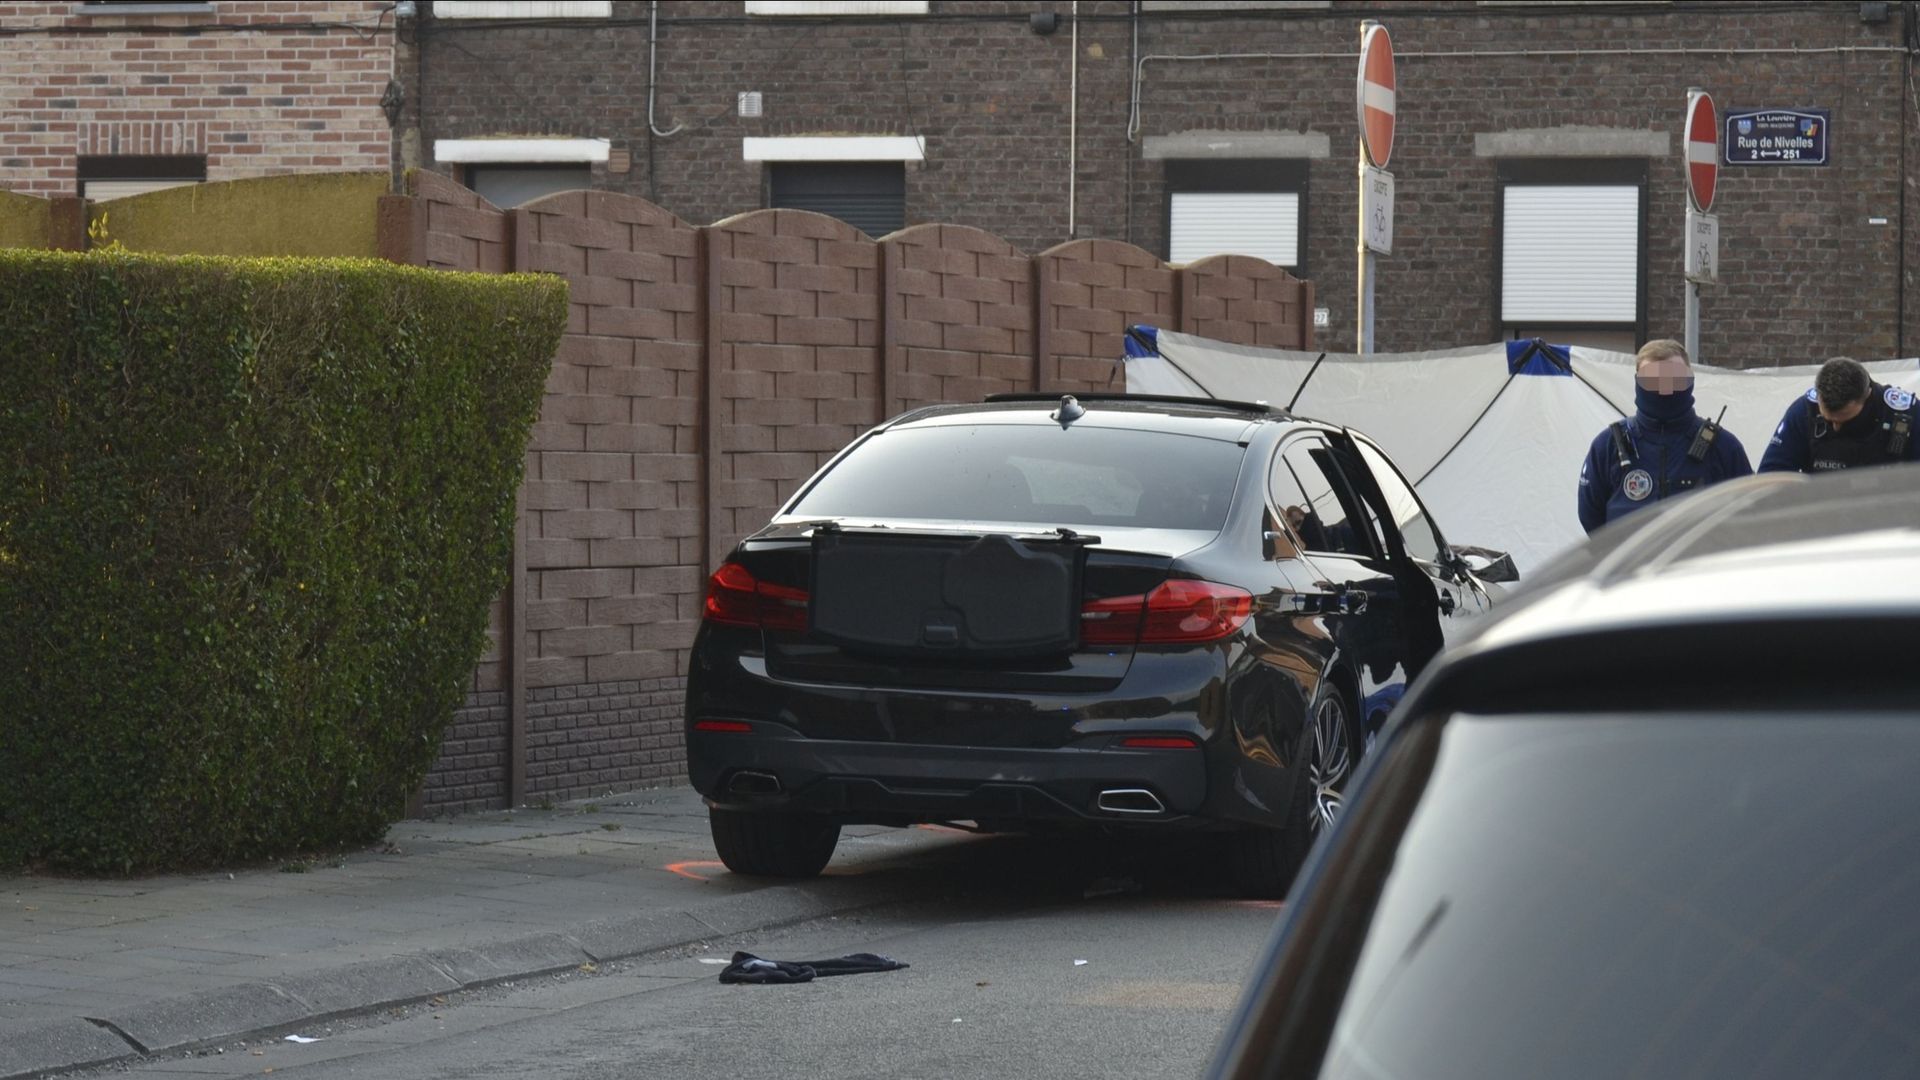 La BMW impliquée dans le drame qui a secoué Strépy-Bracquegnies dimanche dernier était, semble-t-il, équipée un système anti-collision.